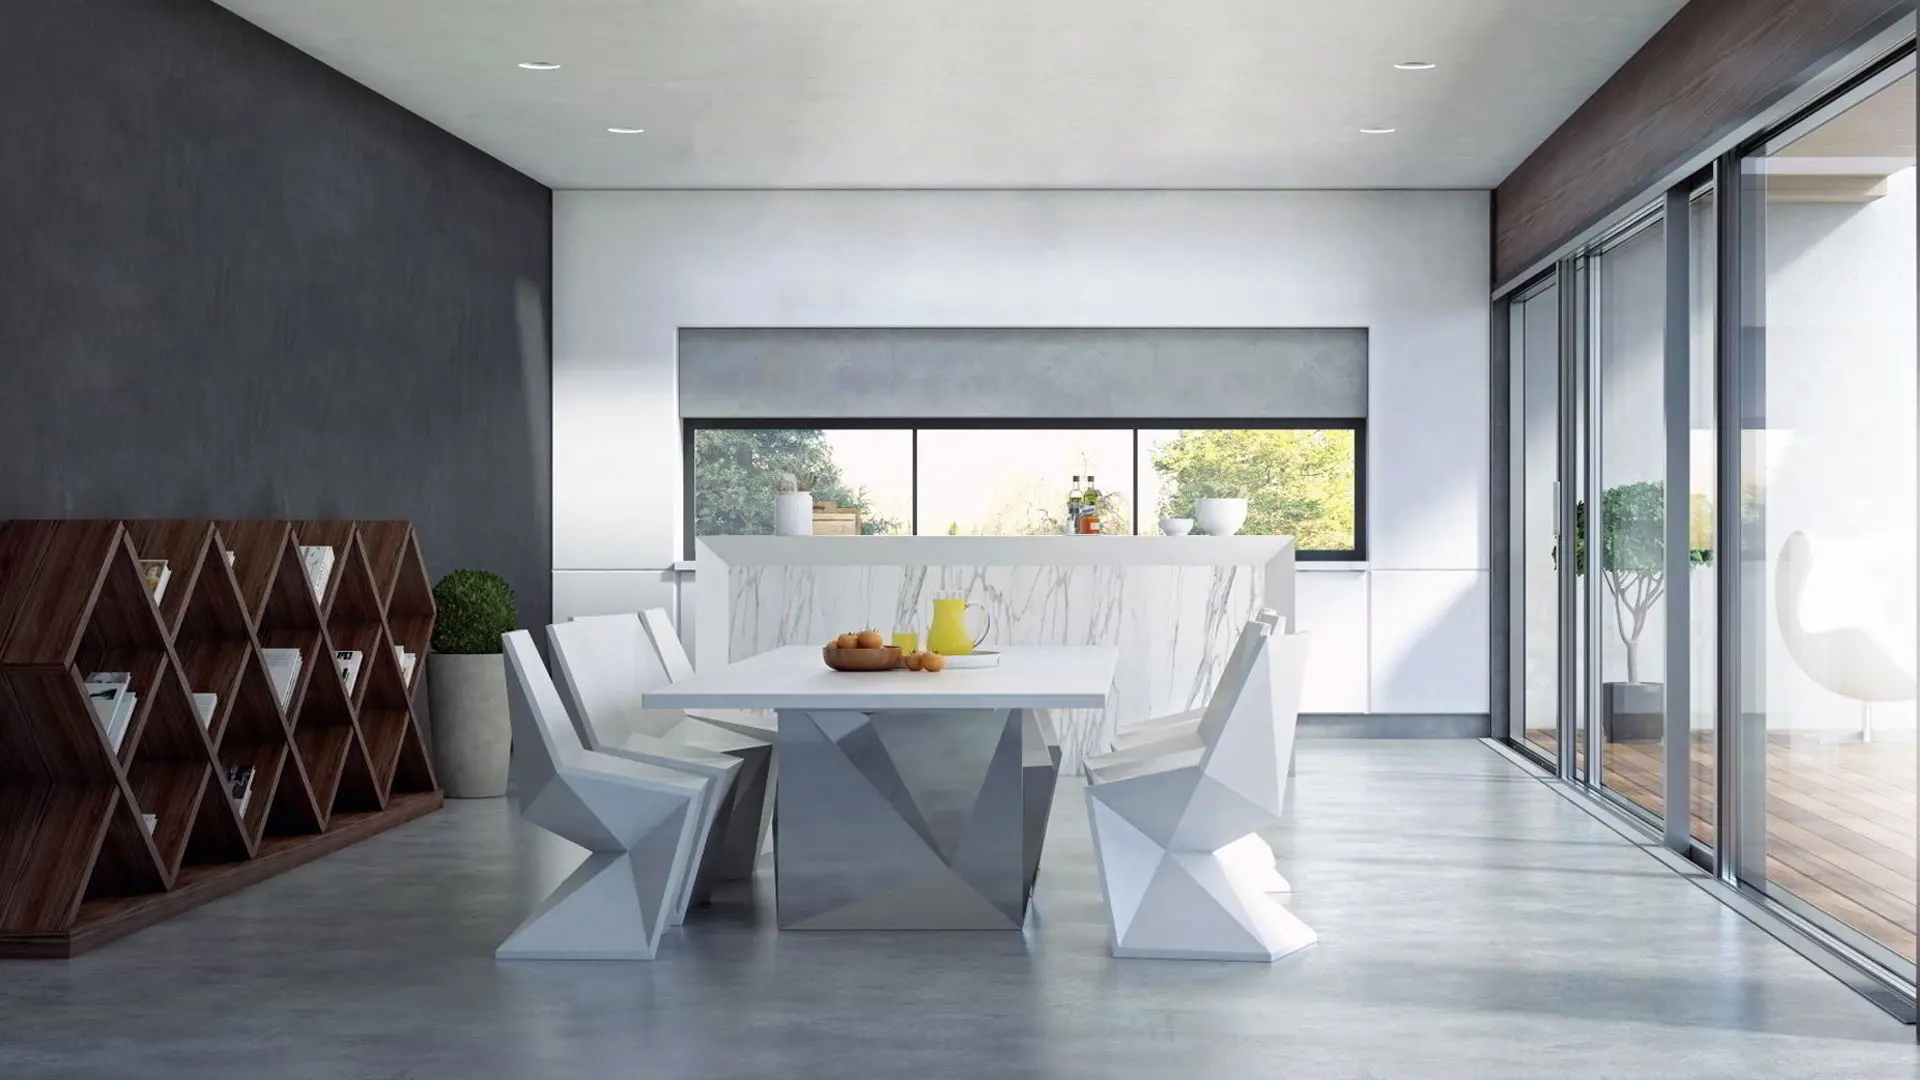 Luksuriøs moderne stue med grå mikrosement på gulv og vegg